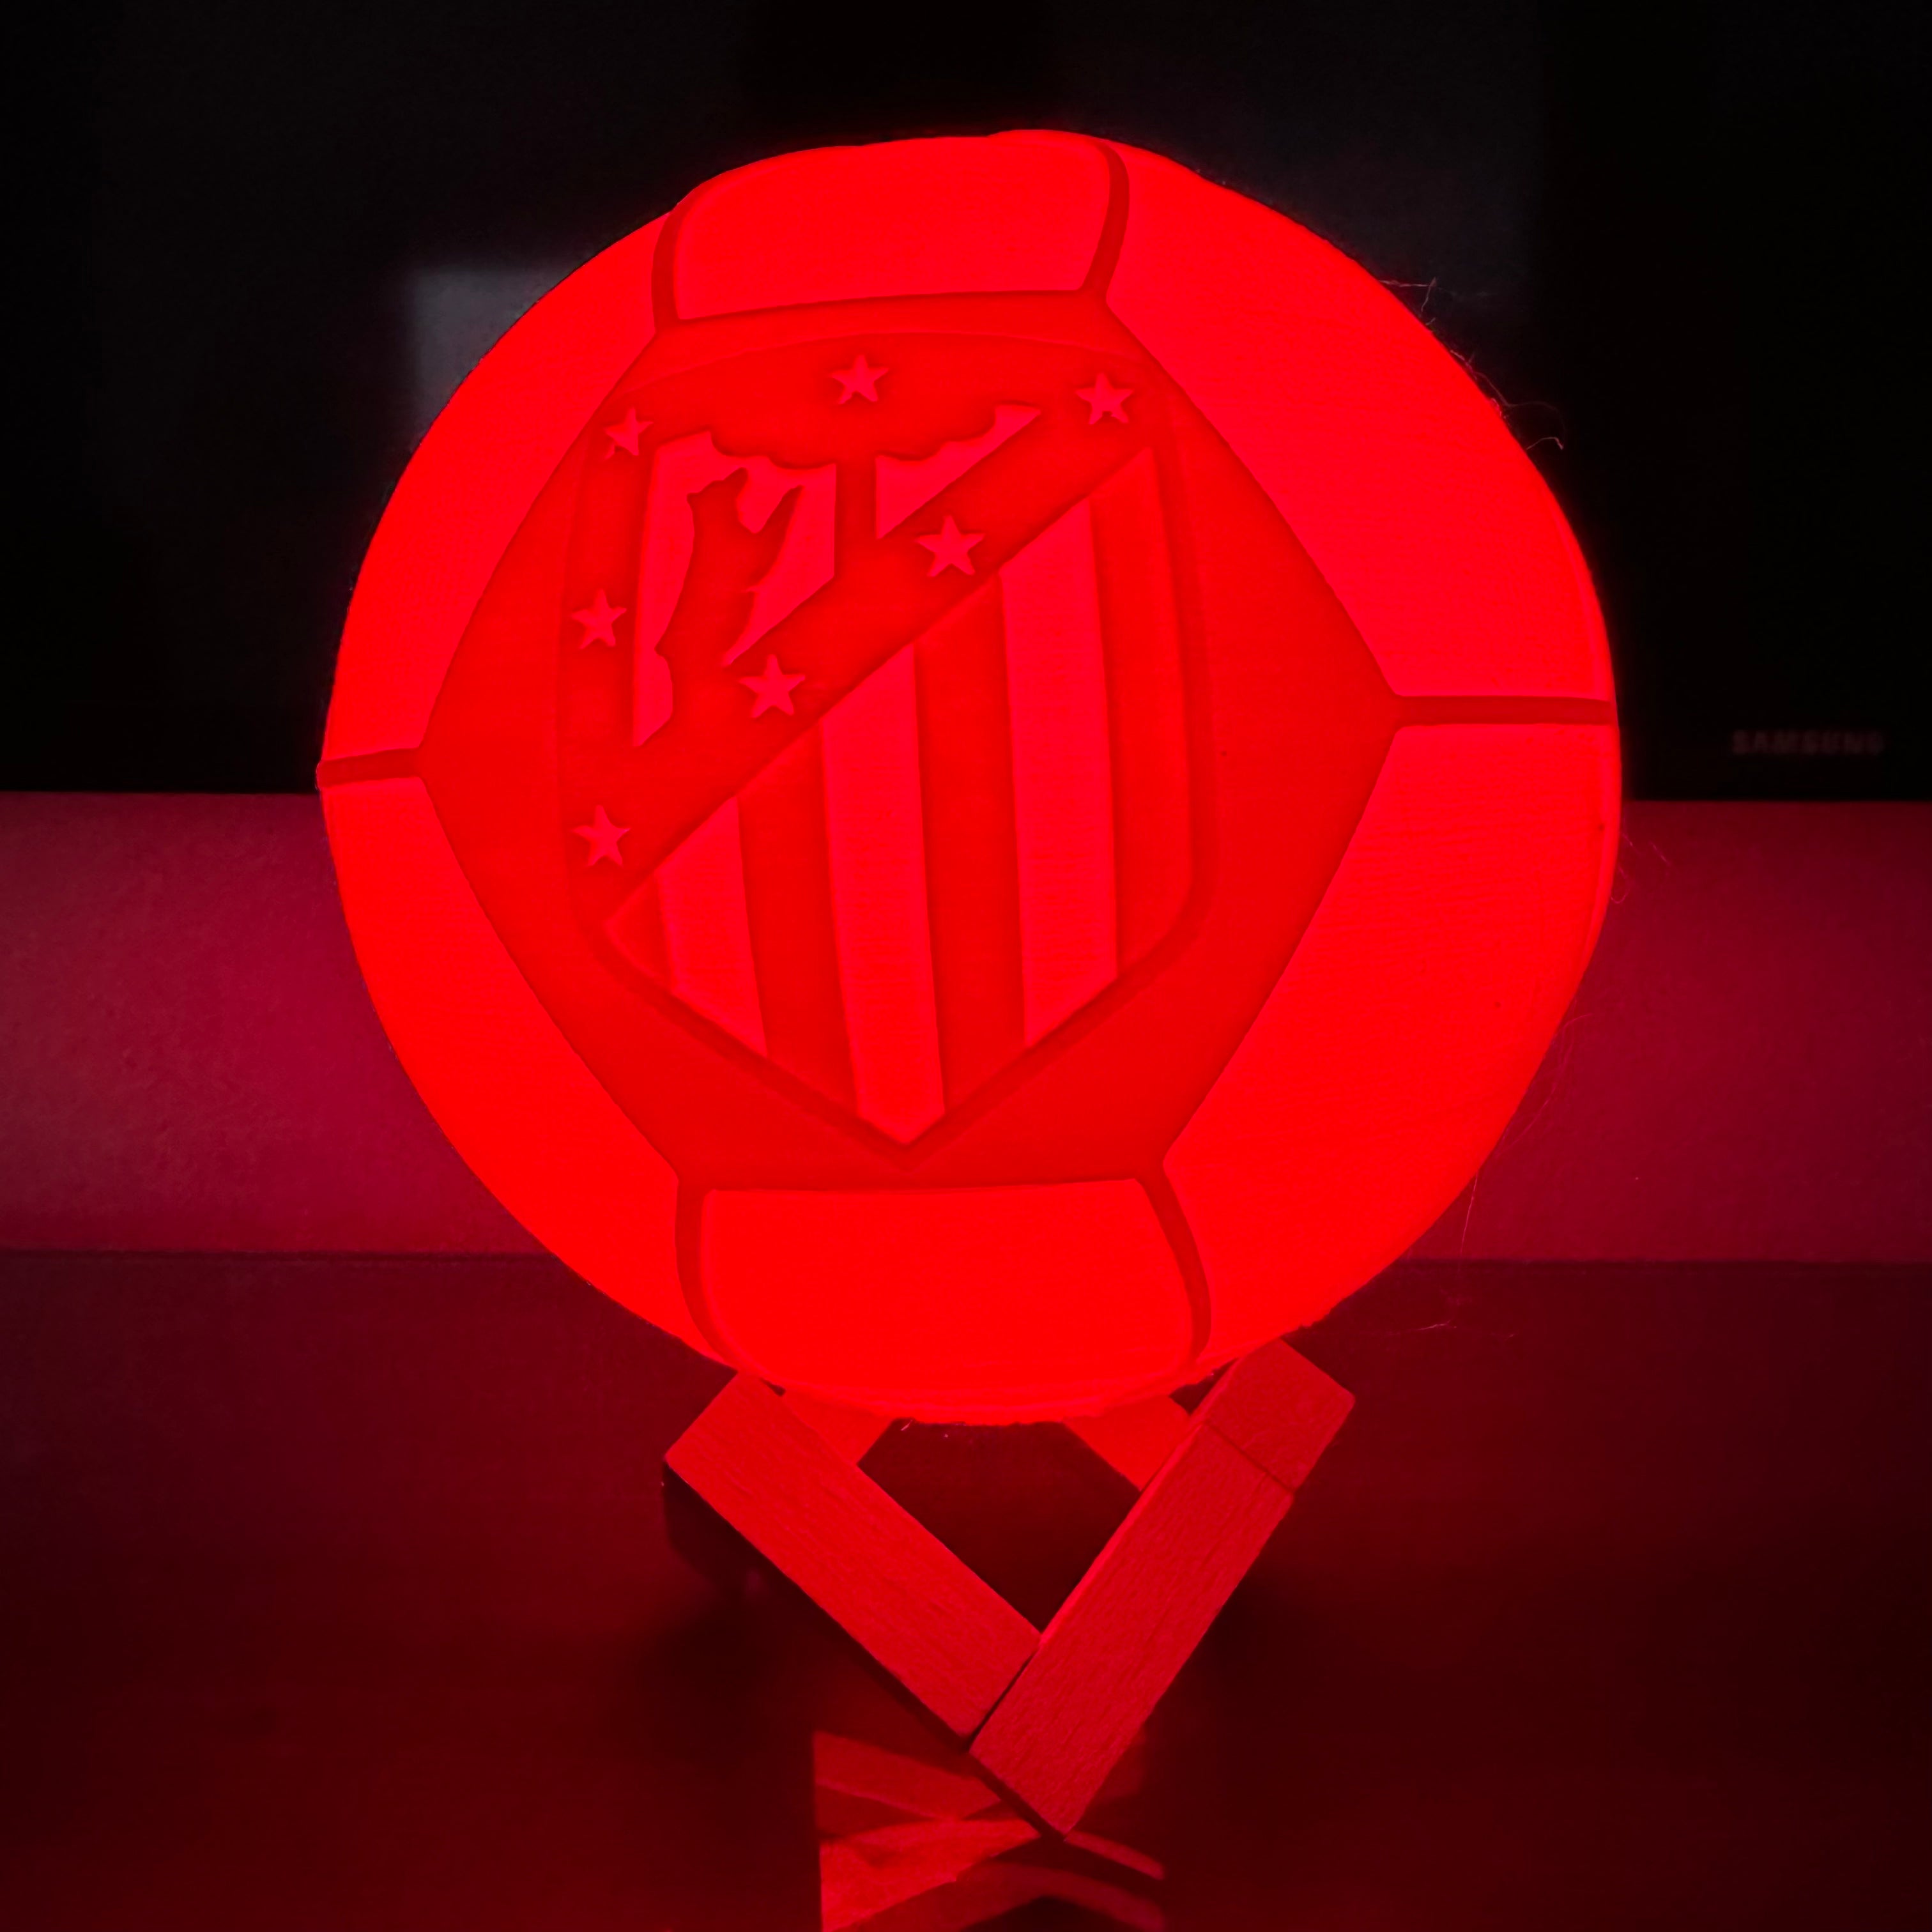 Lámpara Balón de Fútbol Personalizada - Imagina Y Compra